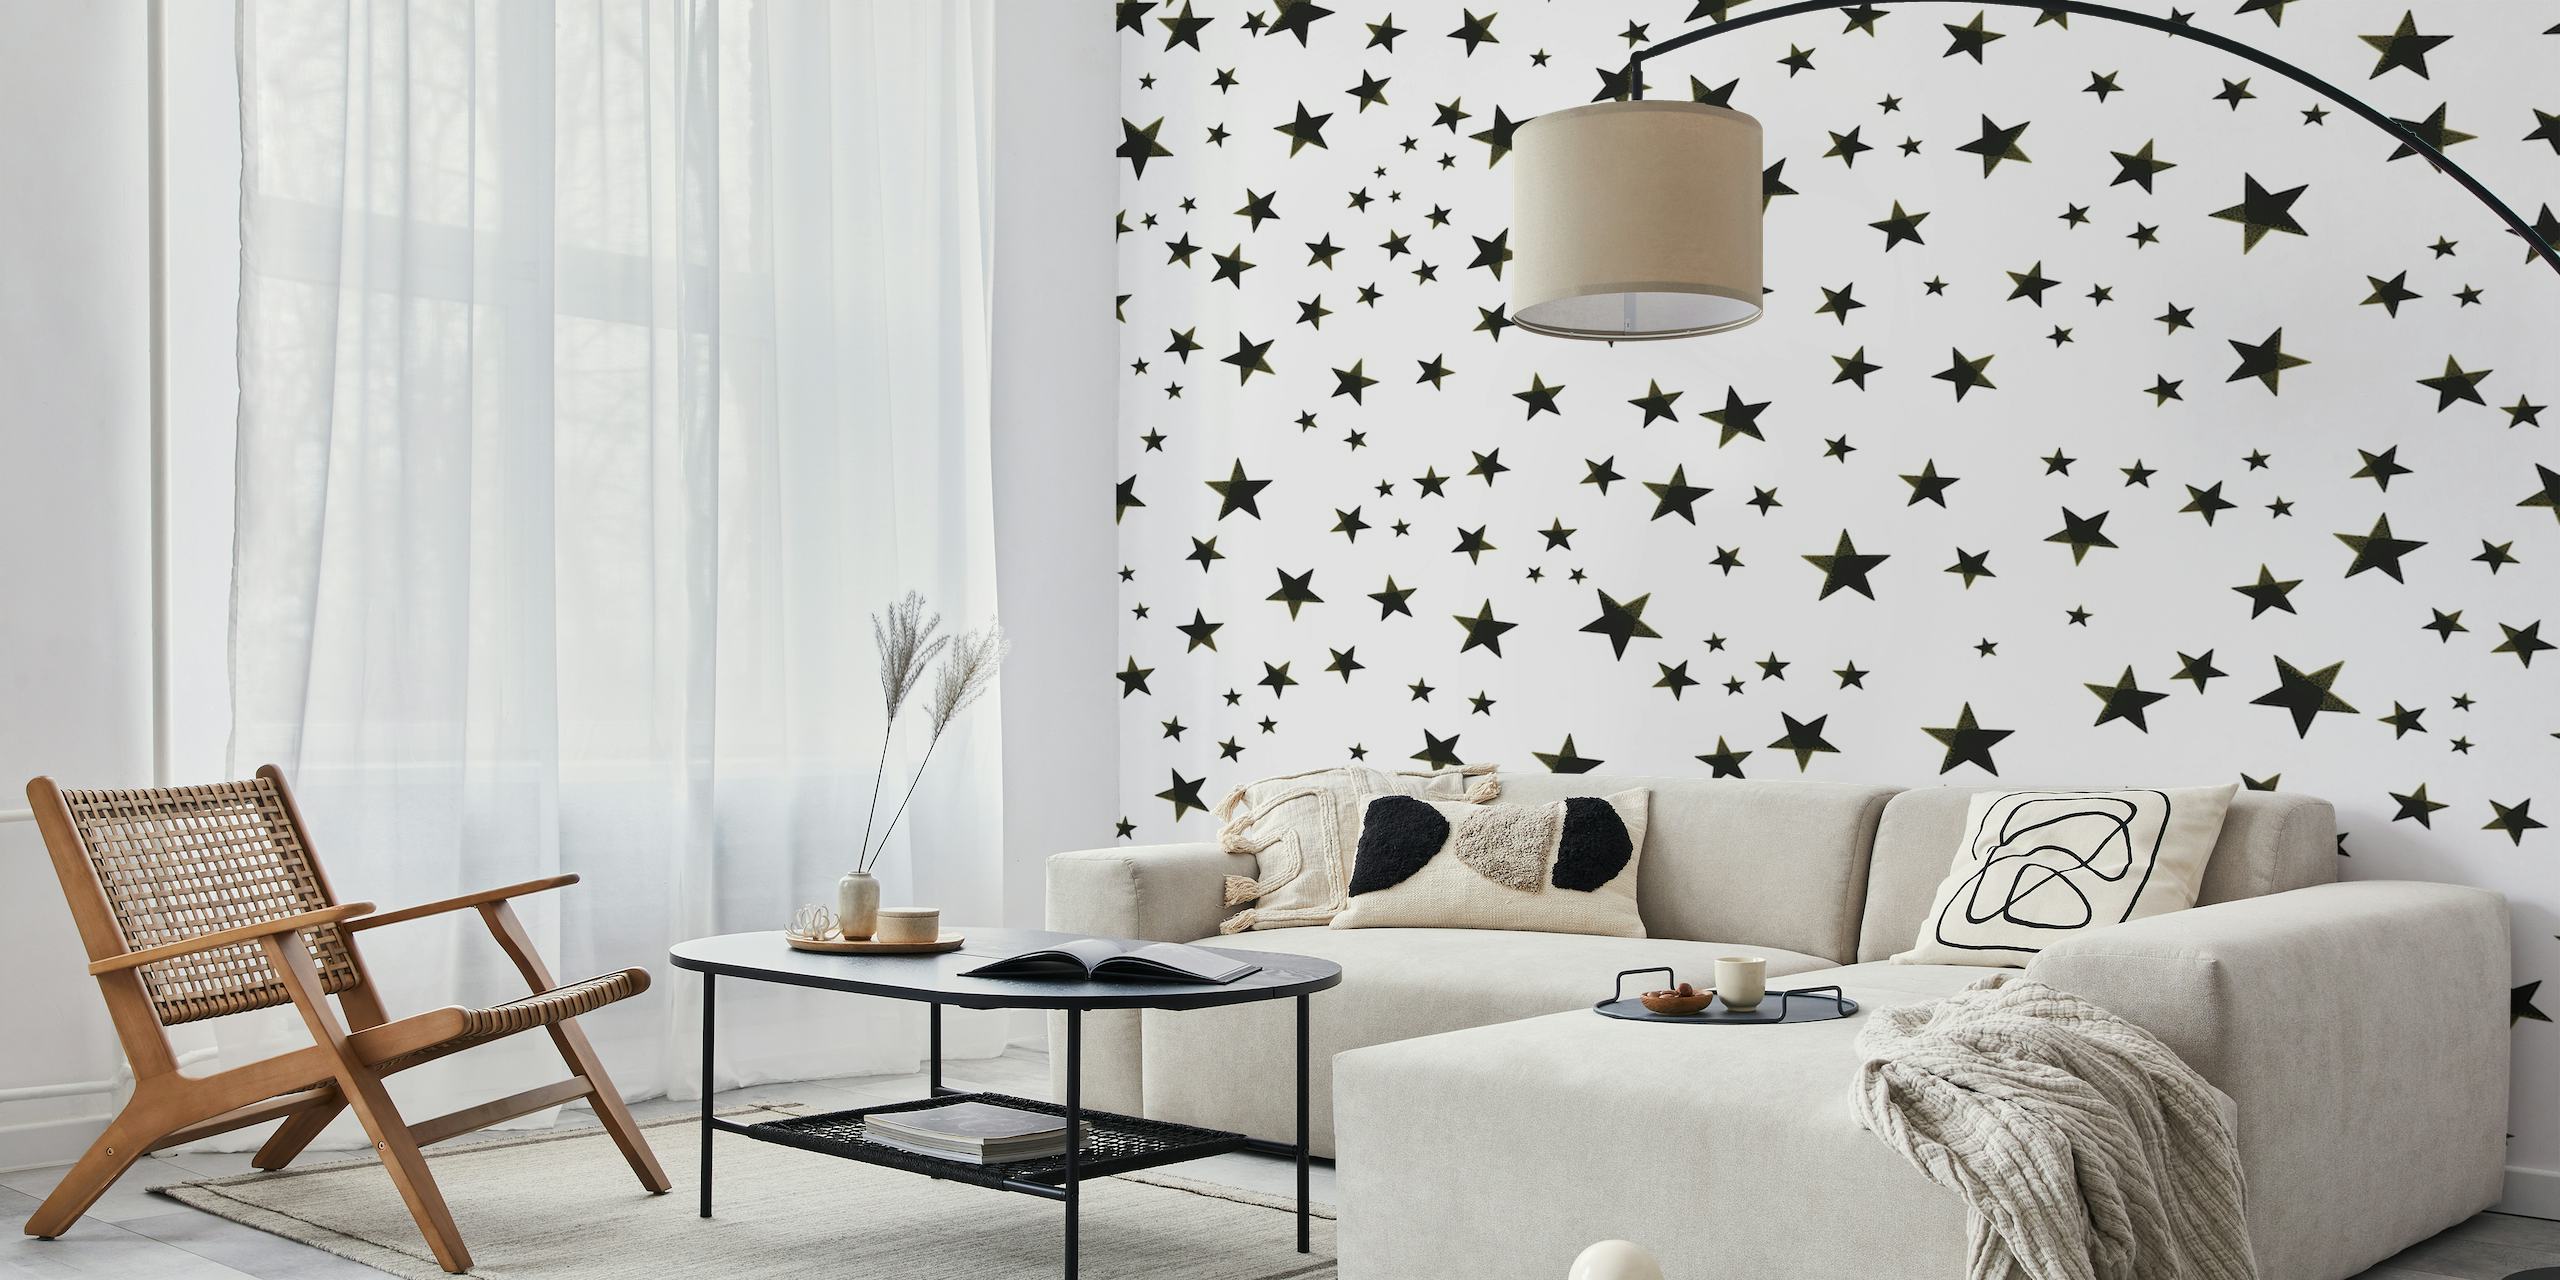 Shining golden and white stars wallpaper